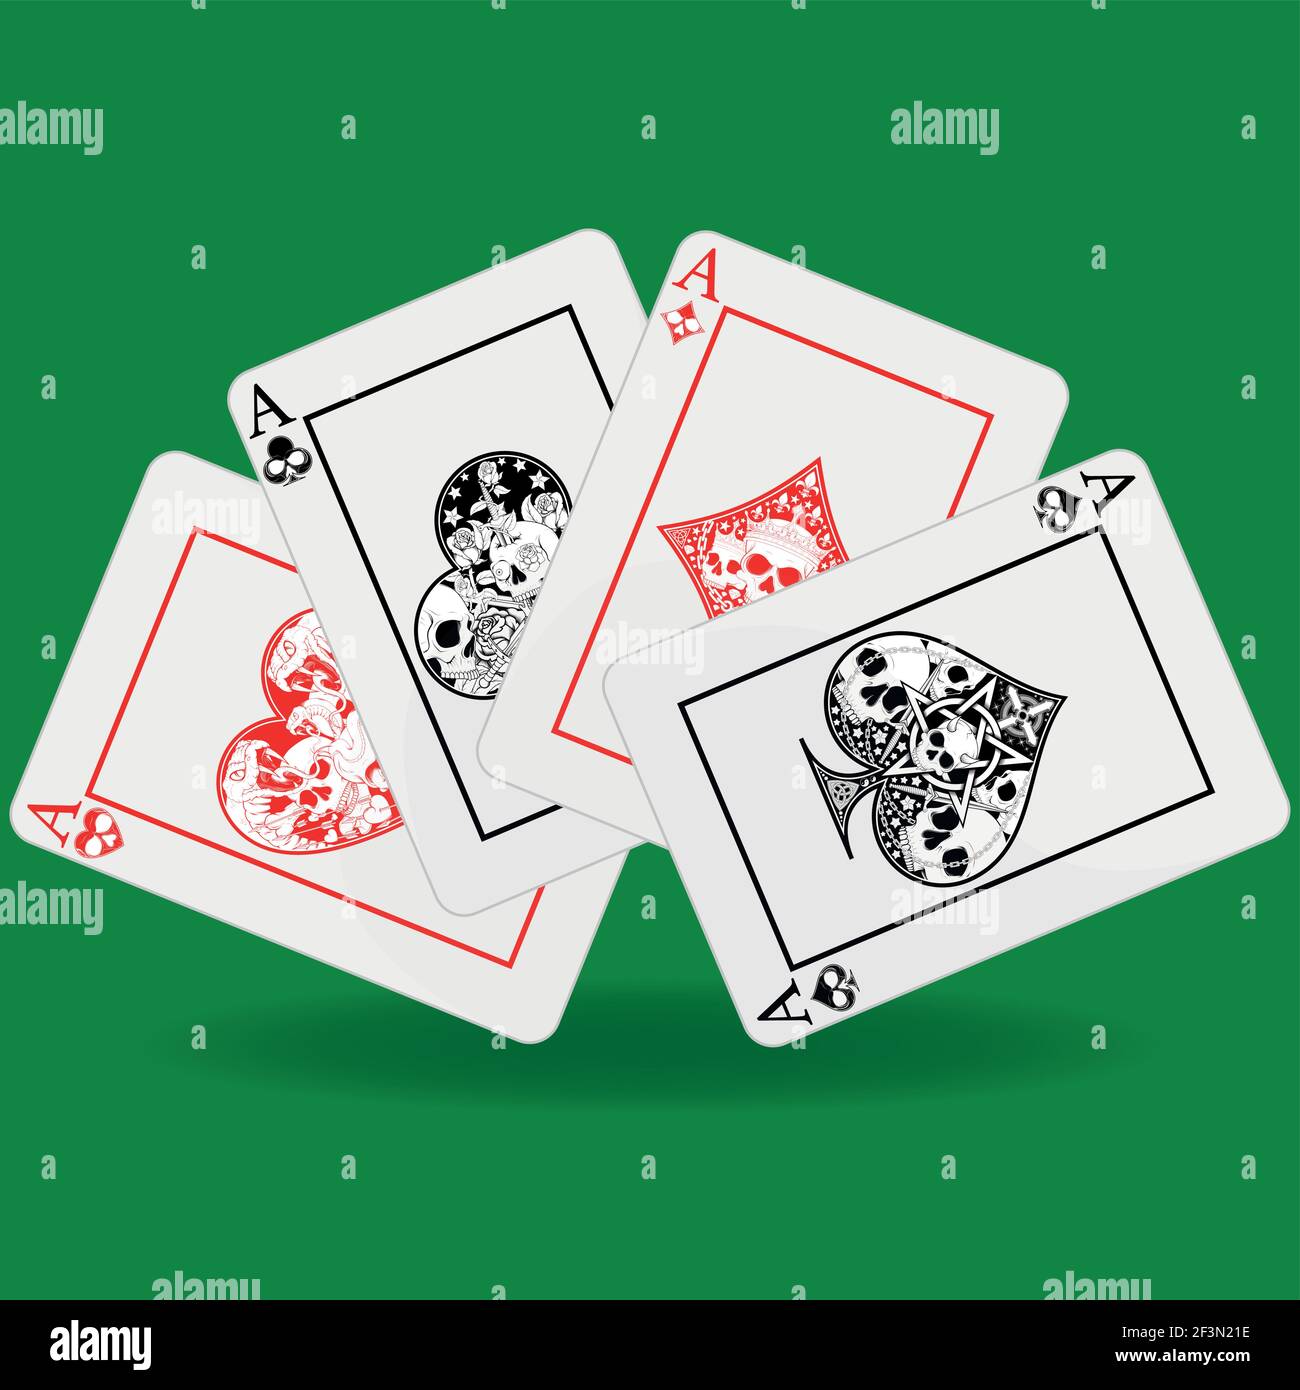 Dessin de main de poker, coeur, diamant, trèfle et symboles ace avec différents motifs de crâne Illustration de Vecteur